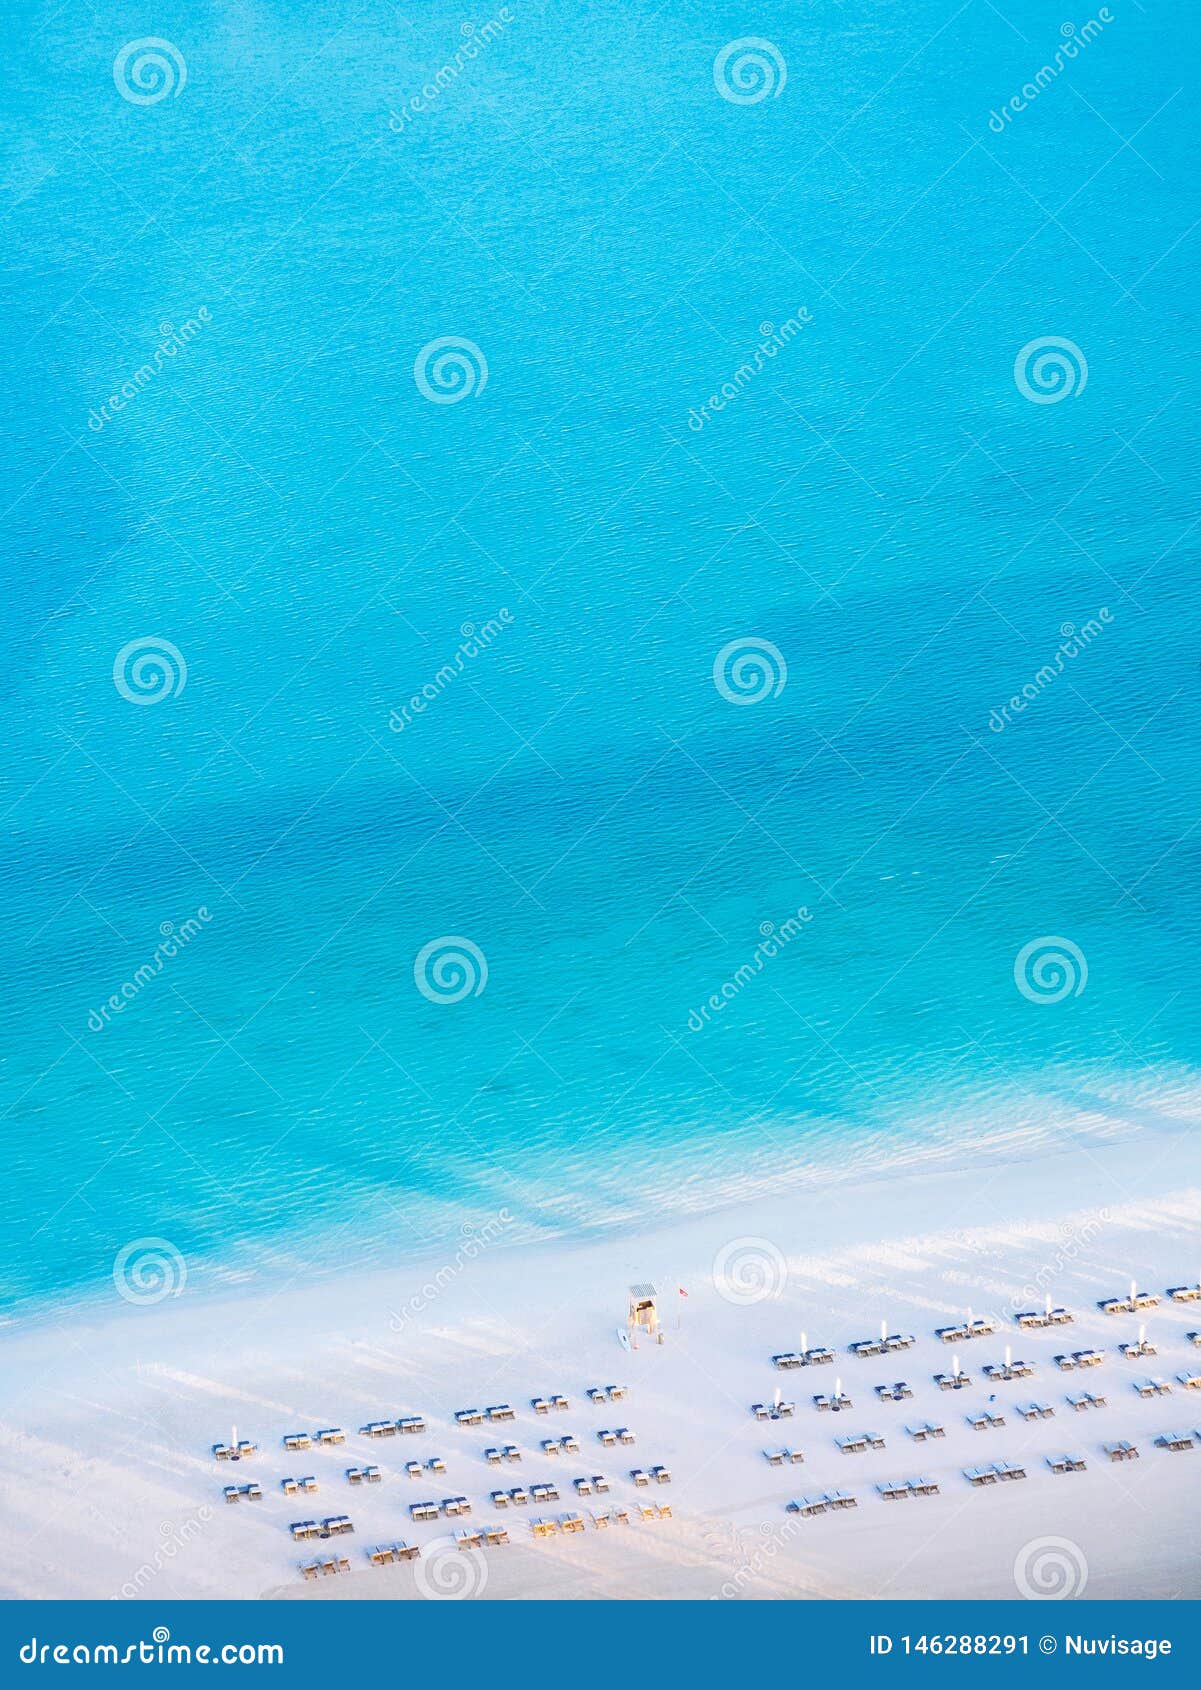 Aerial View Blue Sea White Beach At Corniche Beach Abu Dhabi Uae